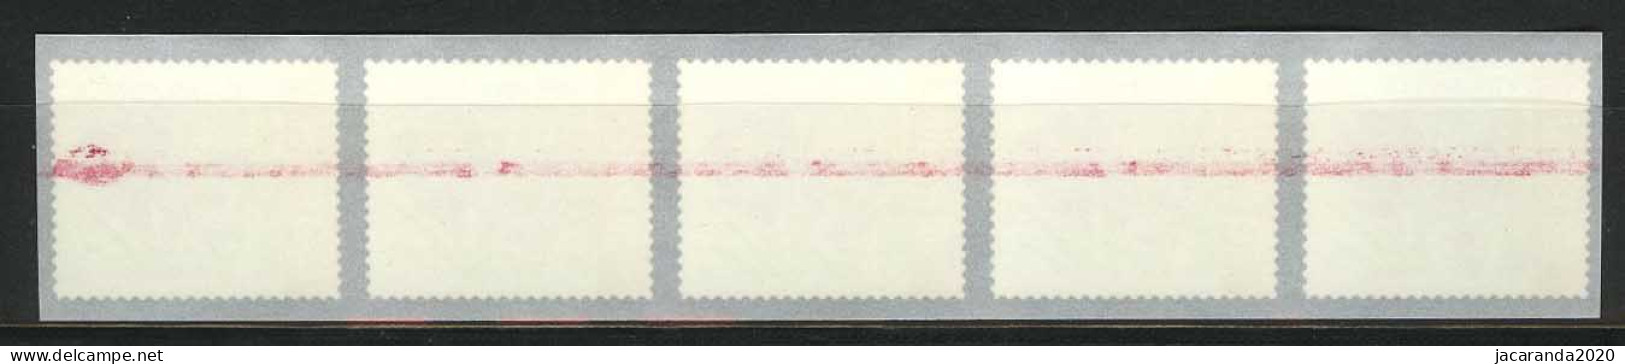 België R108 - Bloemen - Buzin (3227) - Crocus Vernus - 2003 - Strook Van 5 - Bande De 5 - Met Eindstreep - Coil Stamps